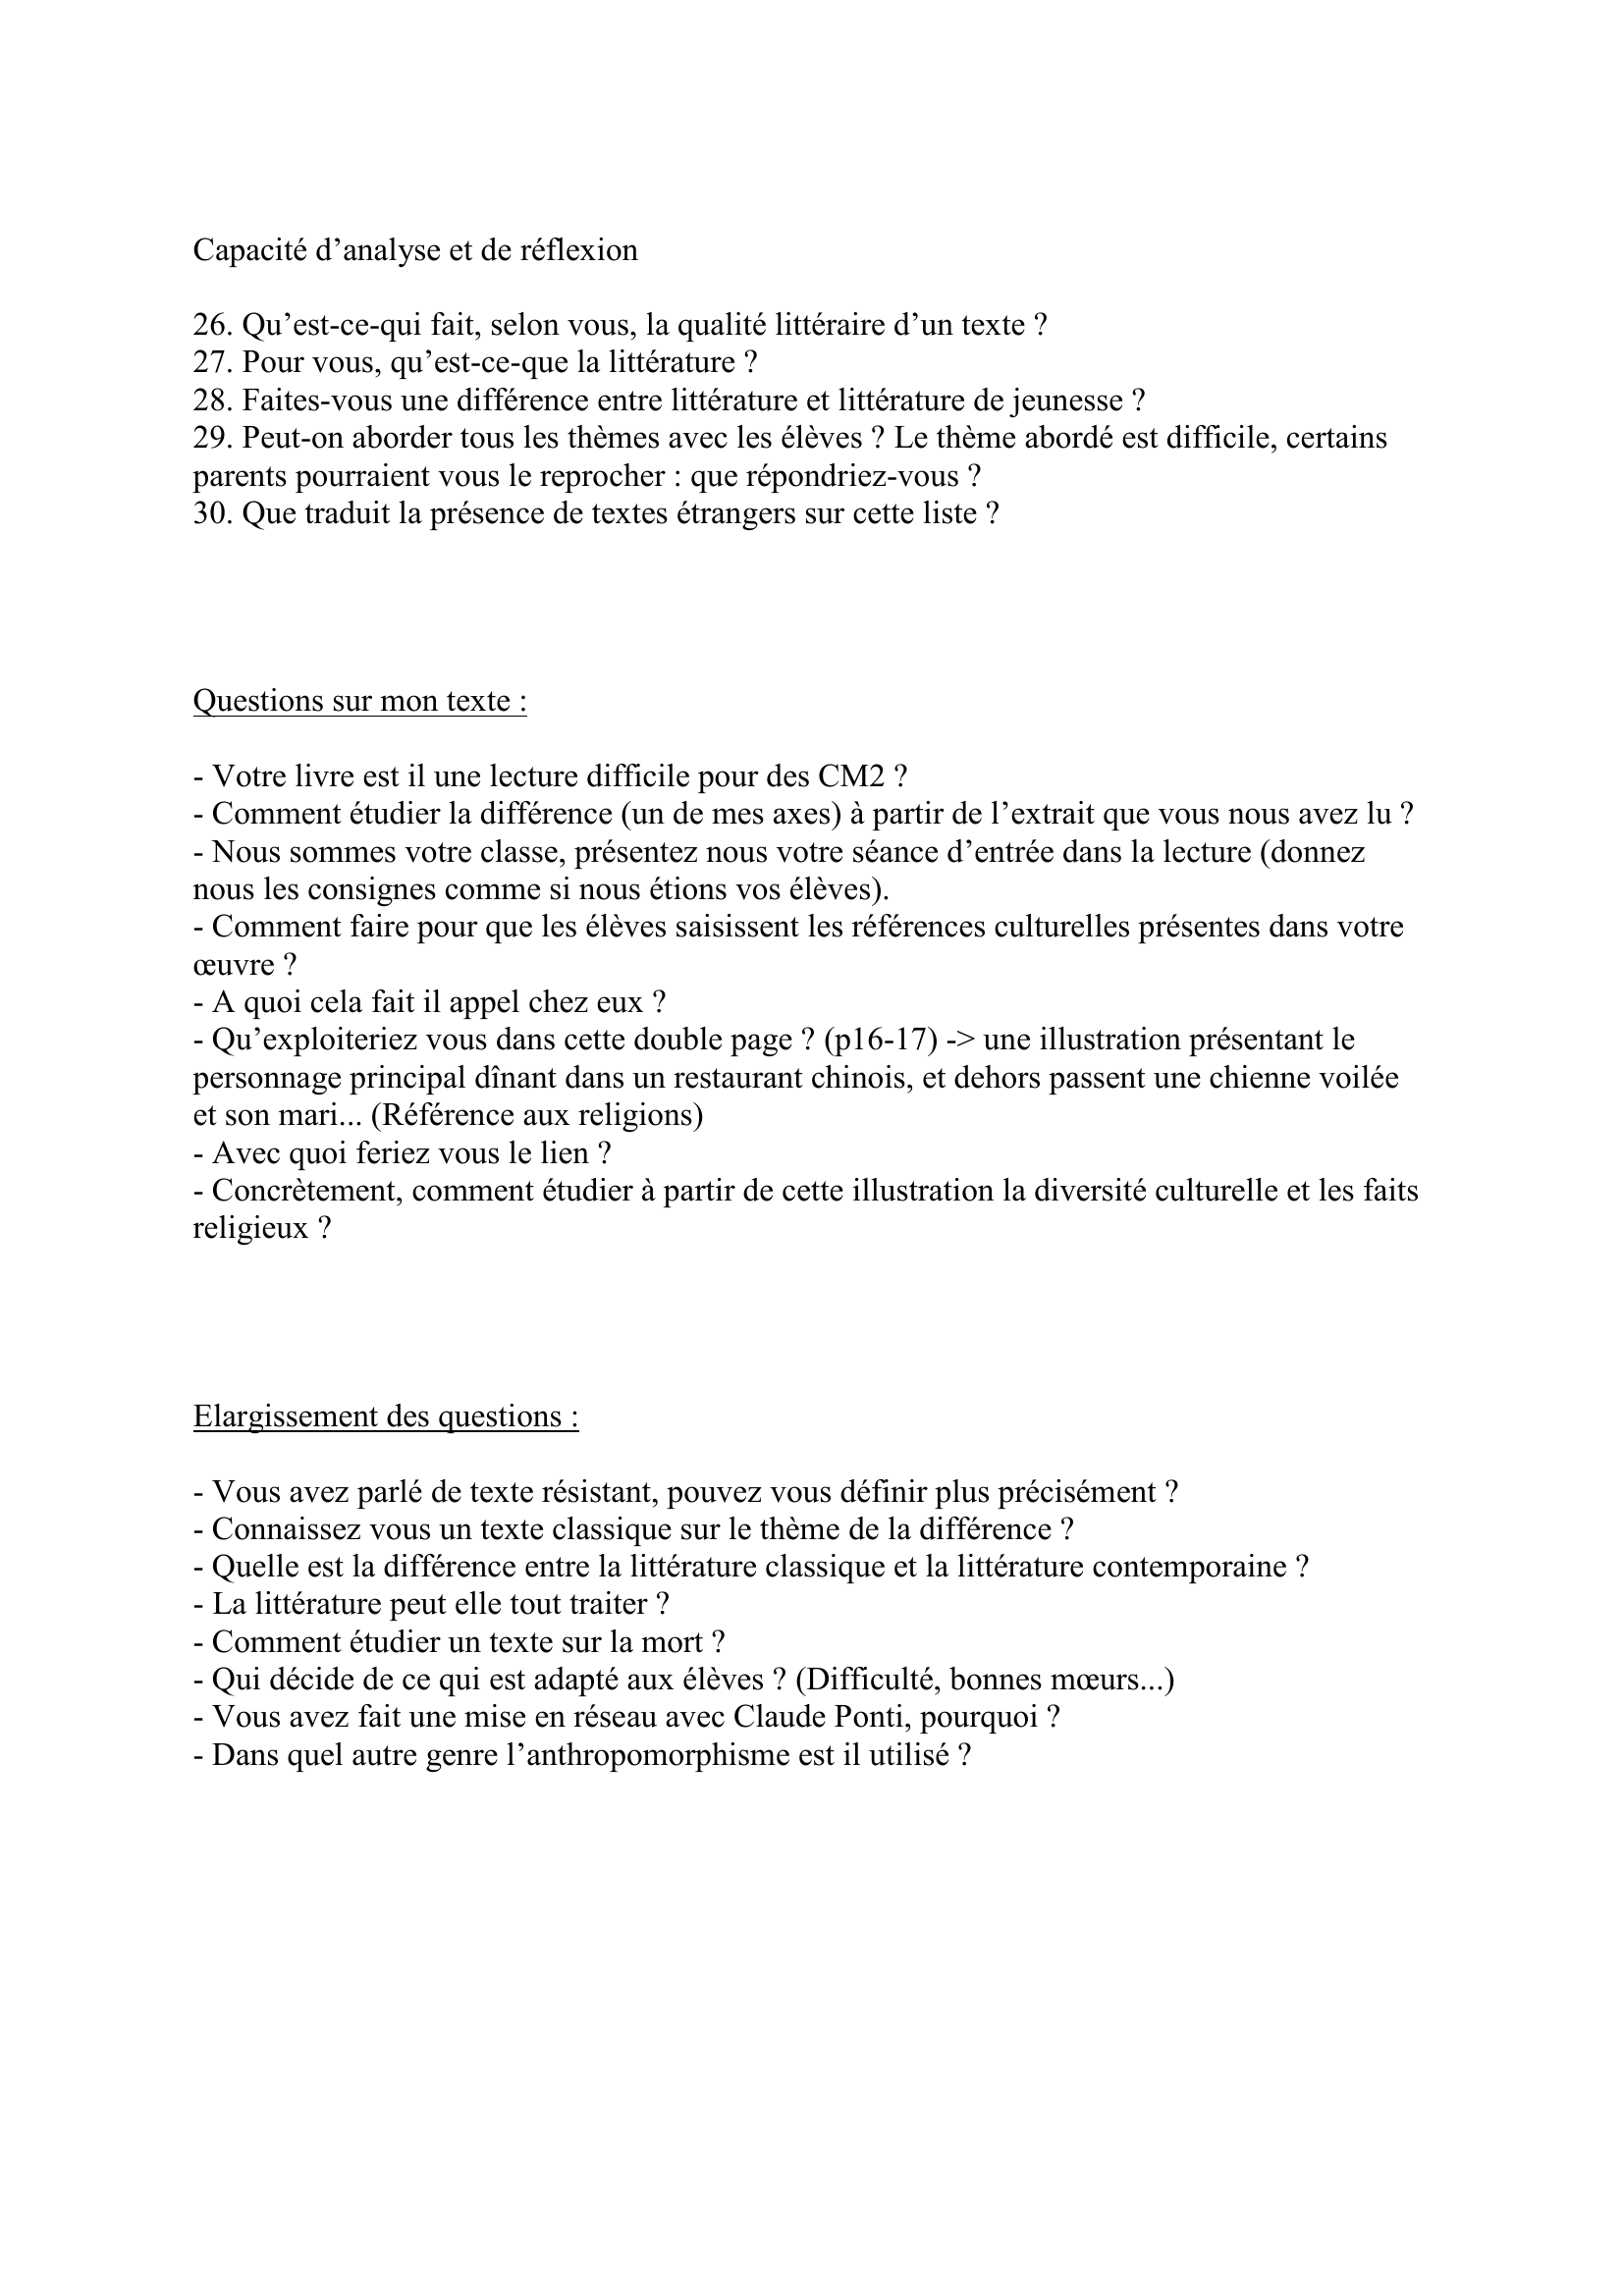 Prévisualisation du document EXEMPLE DE QUESTIONS DE JURY
Fiche construite par Sylvain
Sylvain.